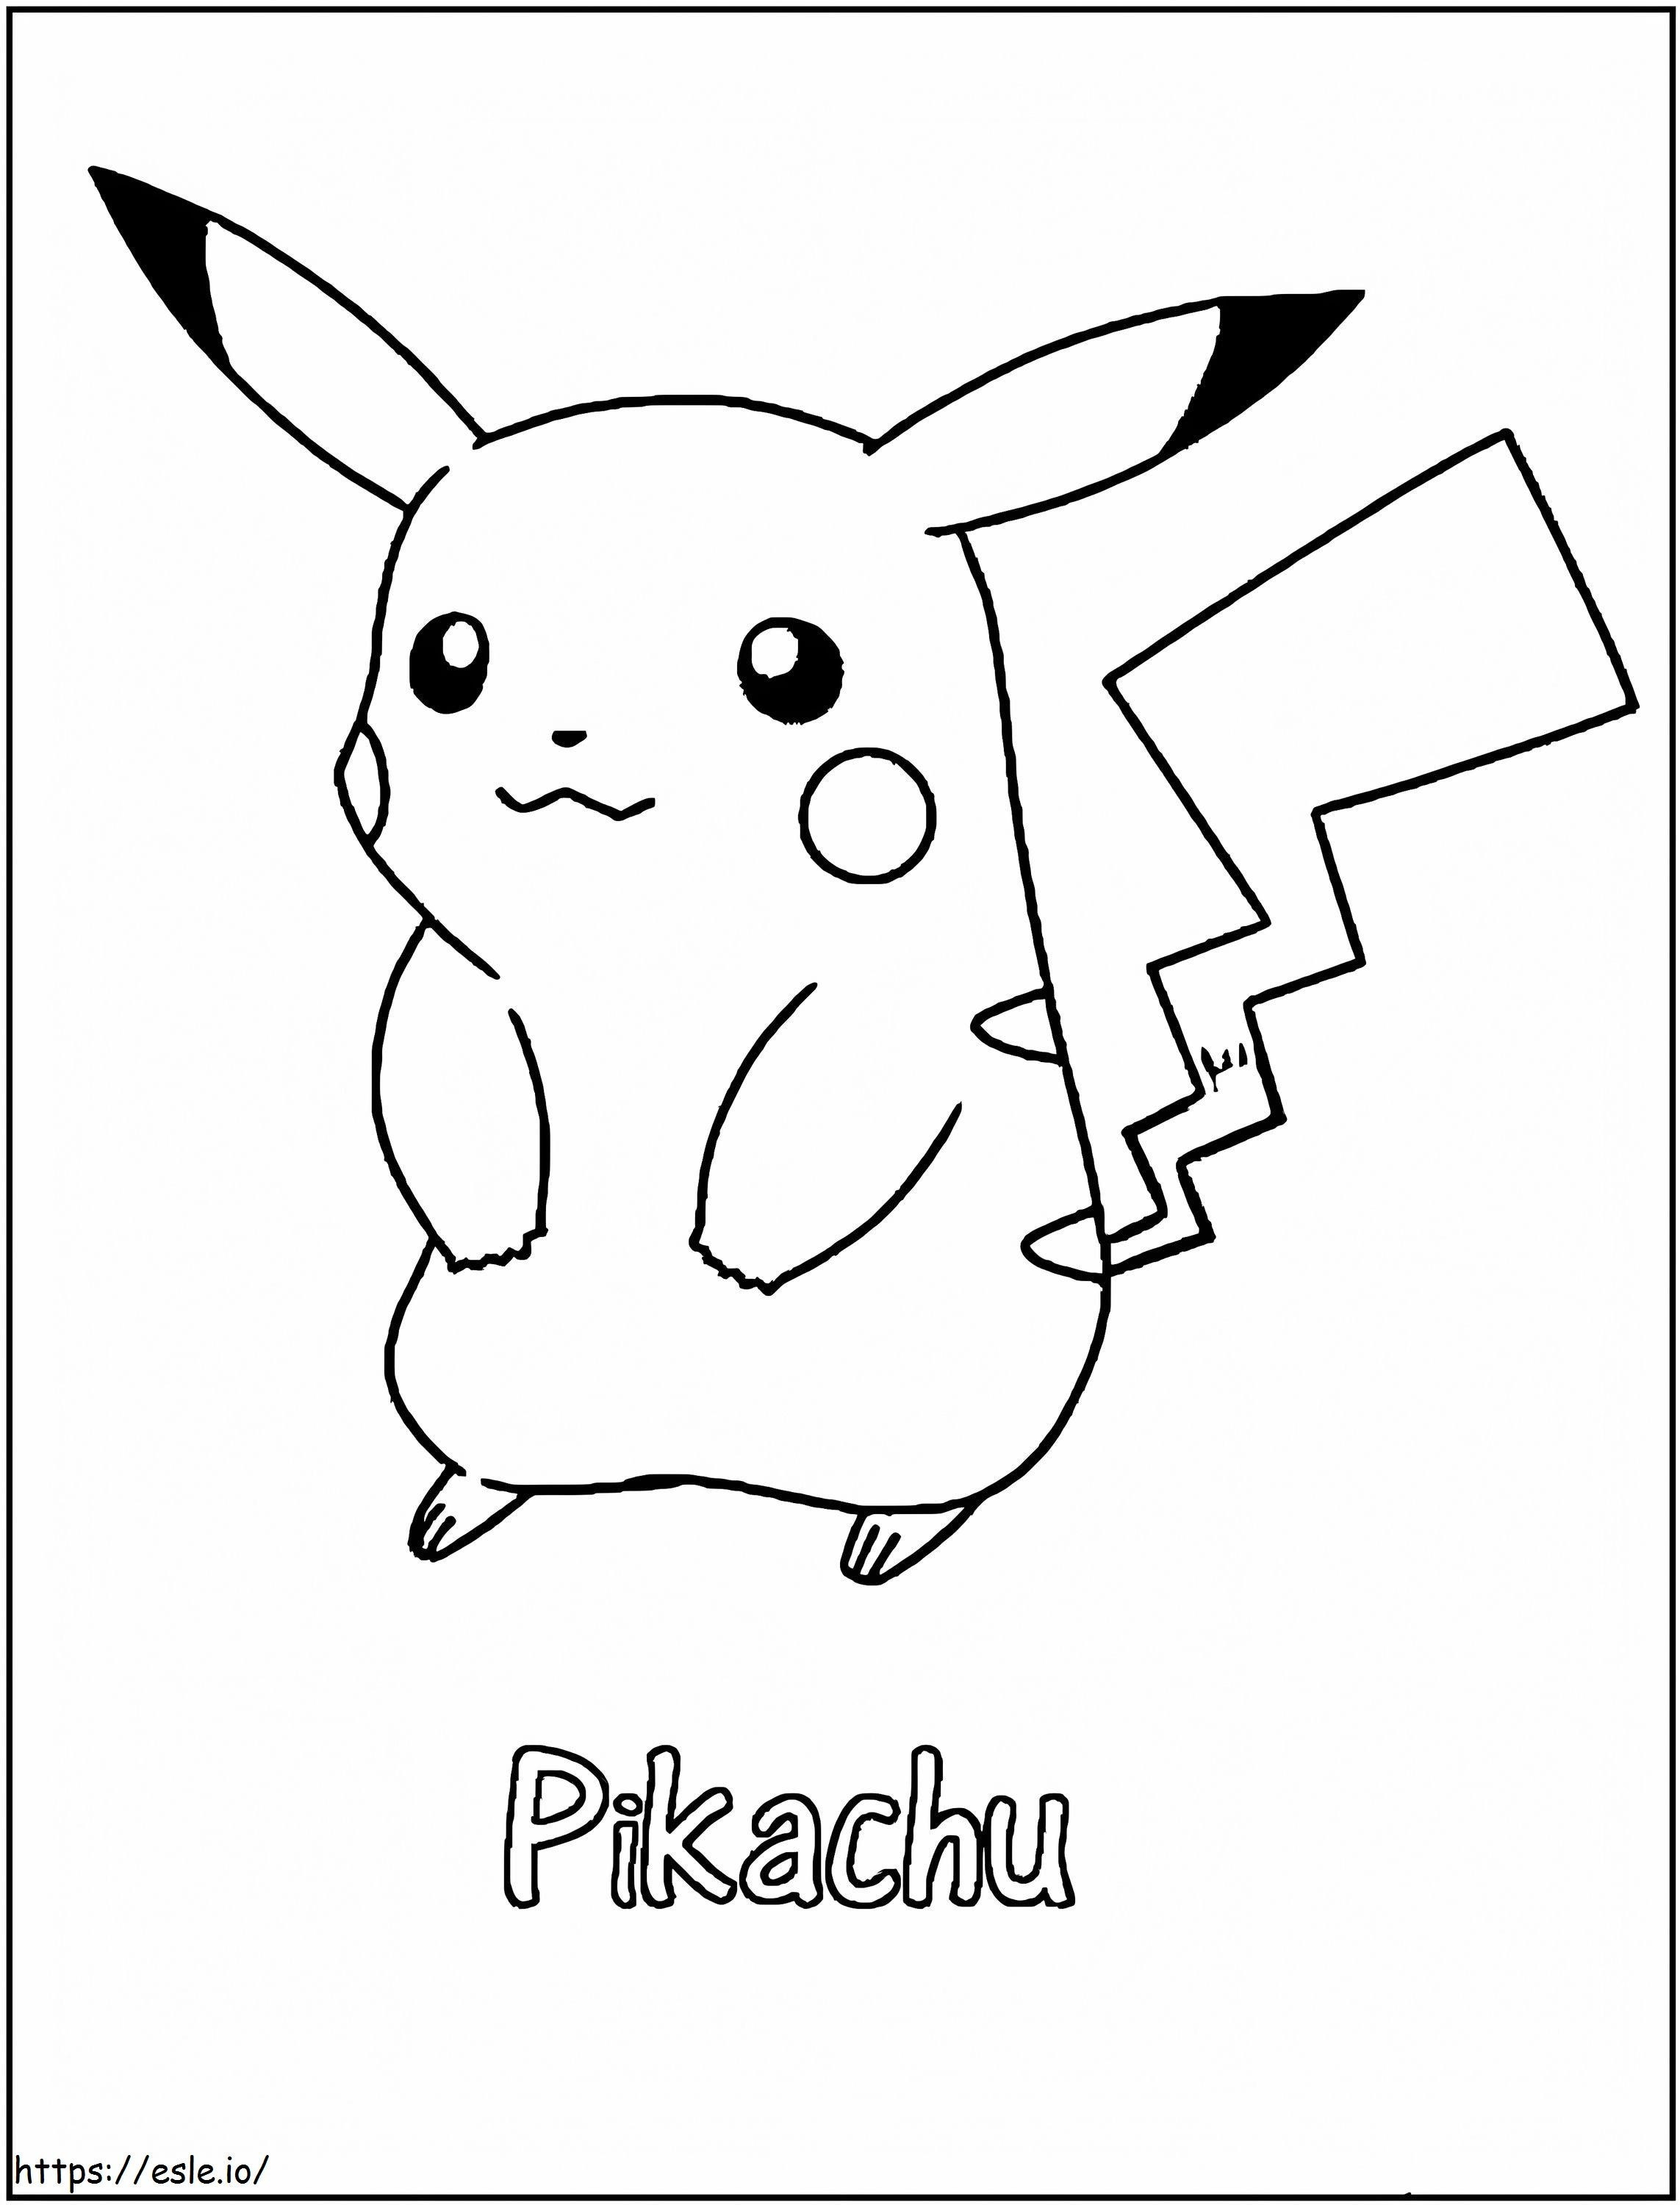 Etkileyici Pikachu boyama